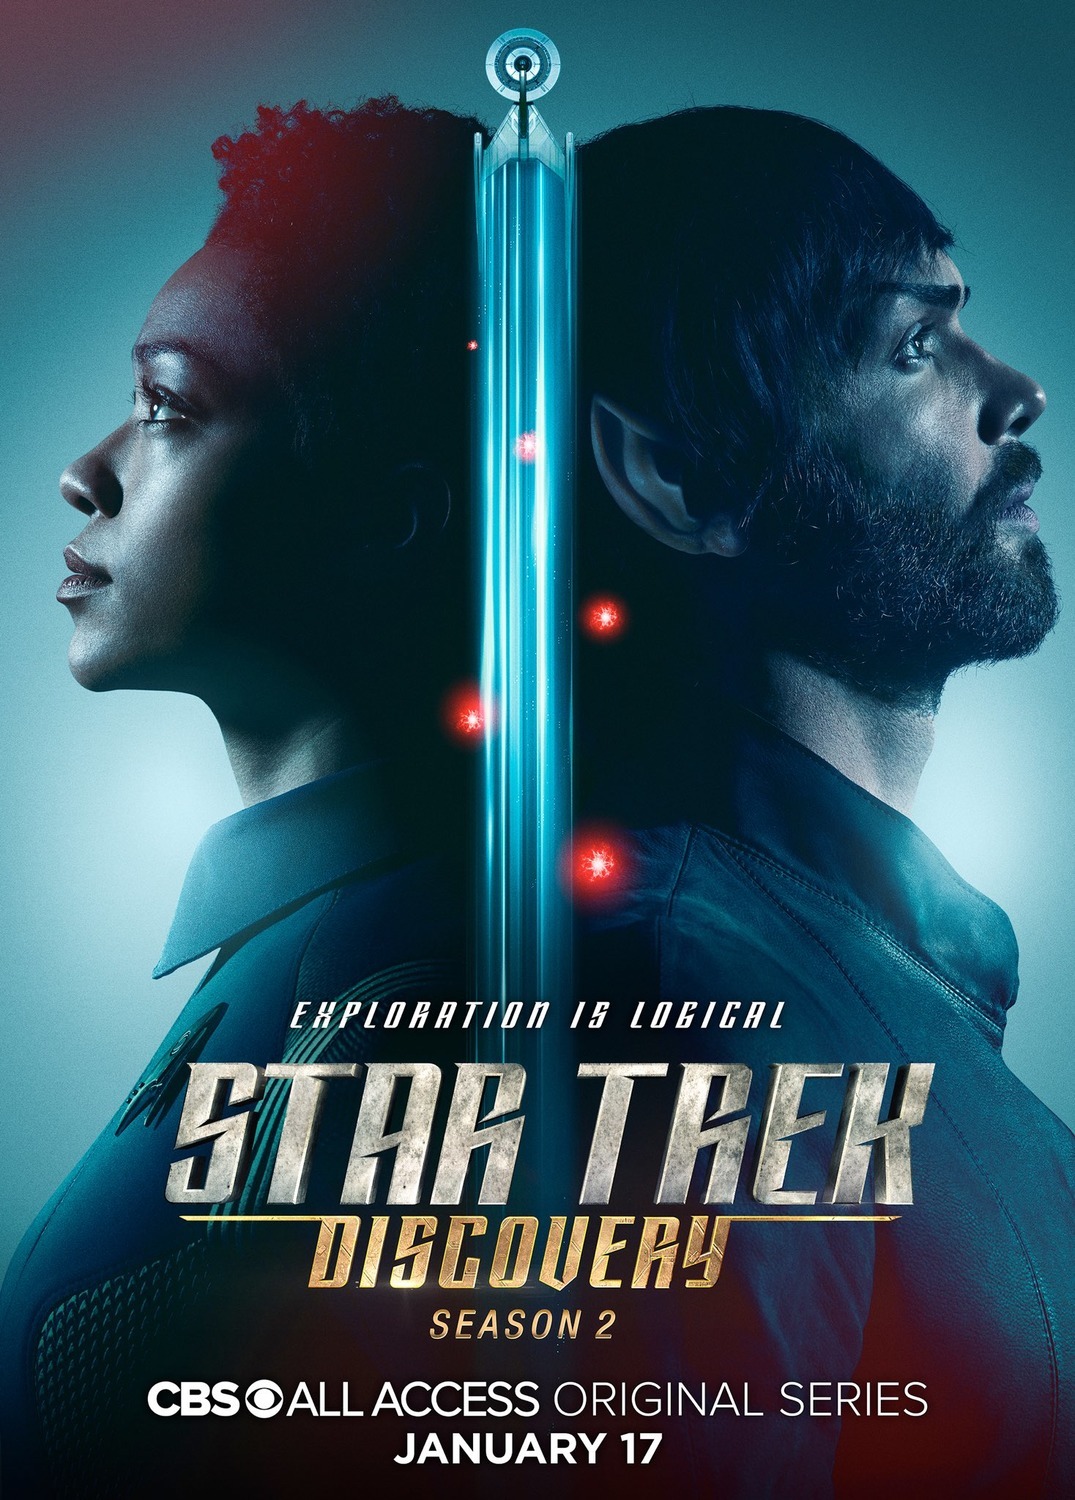 ดูหนังออนไลน์ Star Trek Discovery Season 2 EP.7 สตาร์ เทรค ดิสคัฟเวอรี่ ซีซั่นที่ 2 ตอนที่ 7